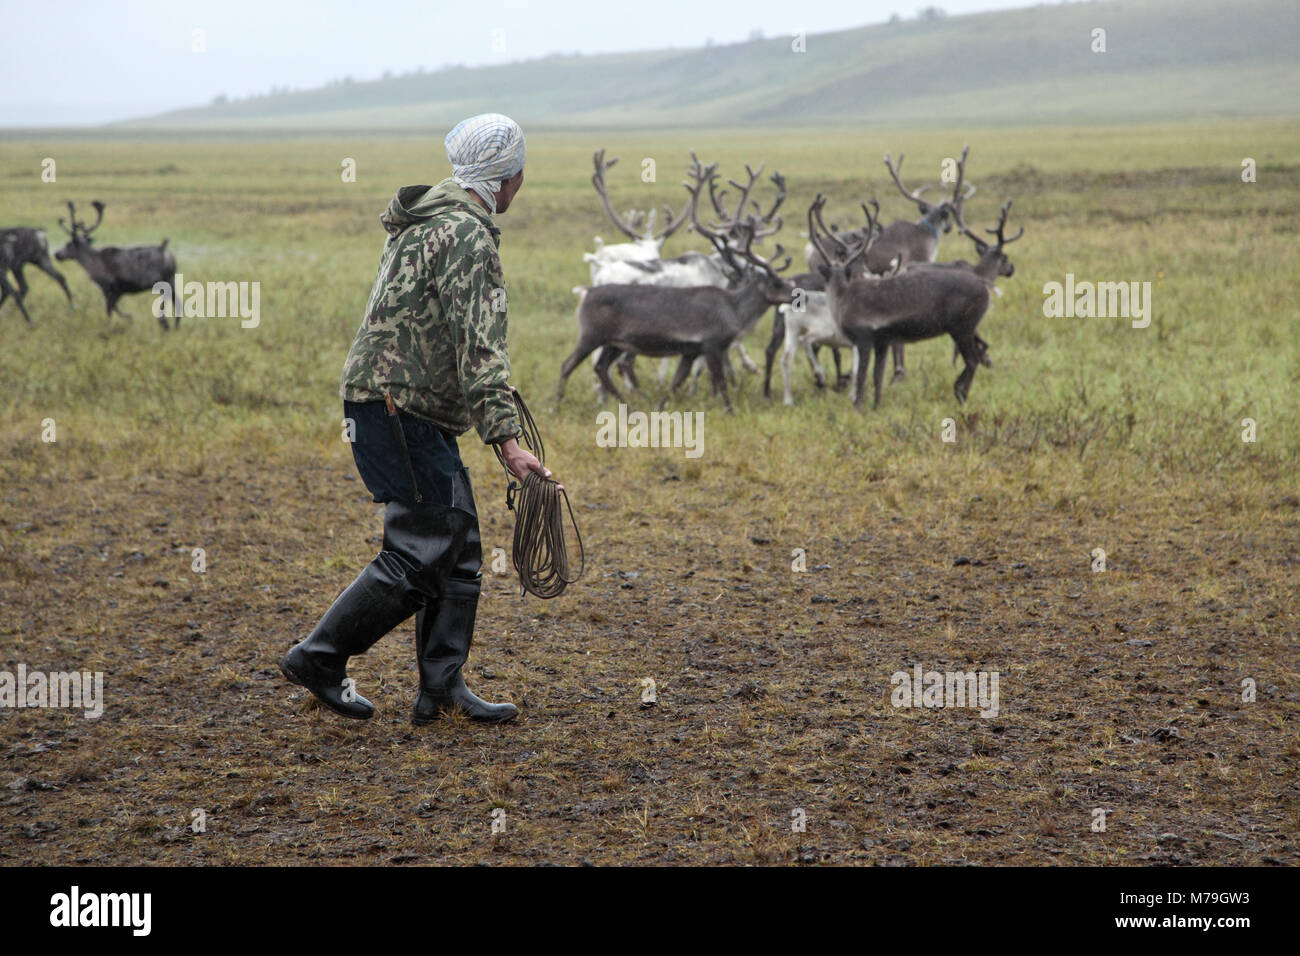 Asia, Russia, Siberia, region of Krasnojarsk, Taimyr peninsula, reindeer nomads, reindeers, reindeer herds, Stock Photo